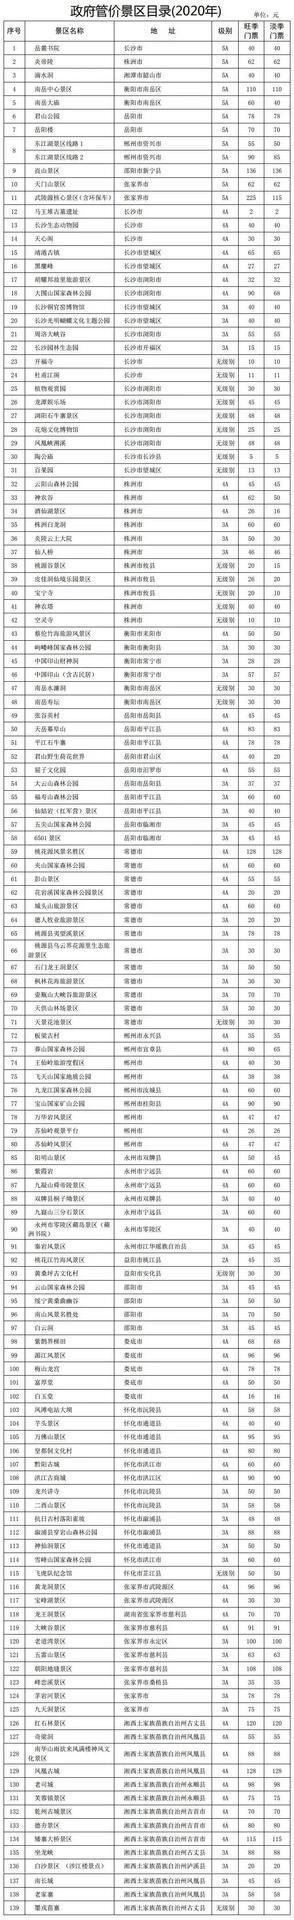 2020湖南139个景区票价优惠政策 名单节目表大全